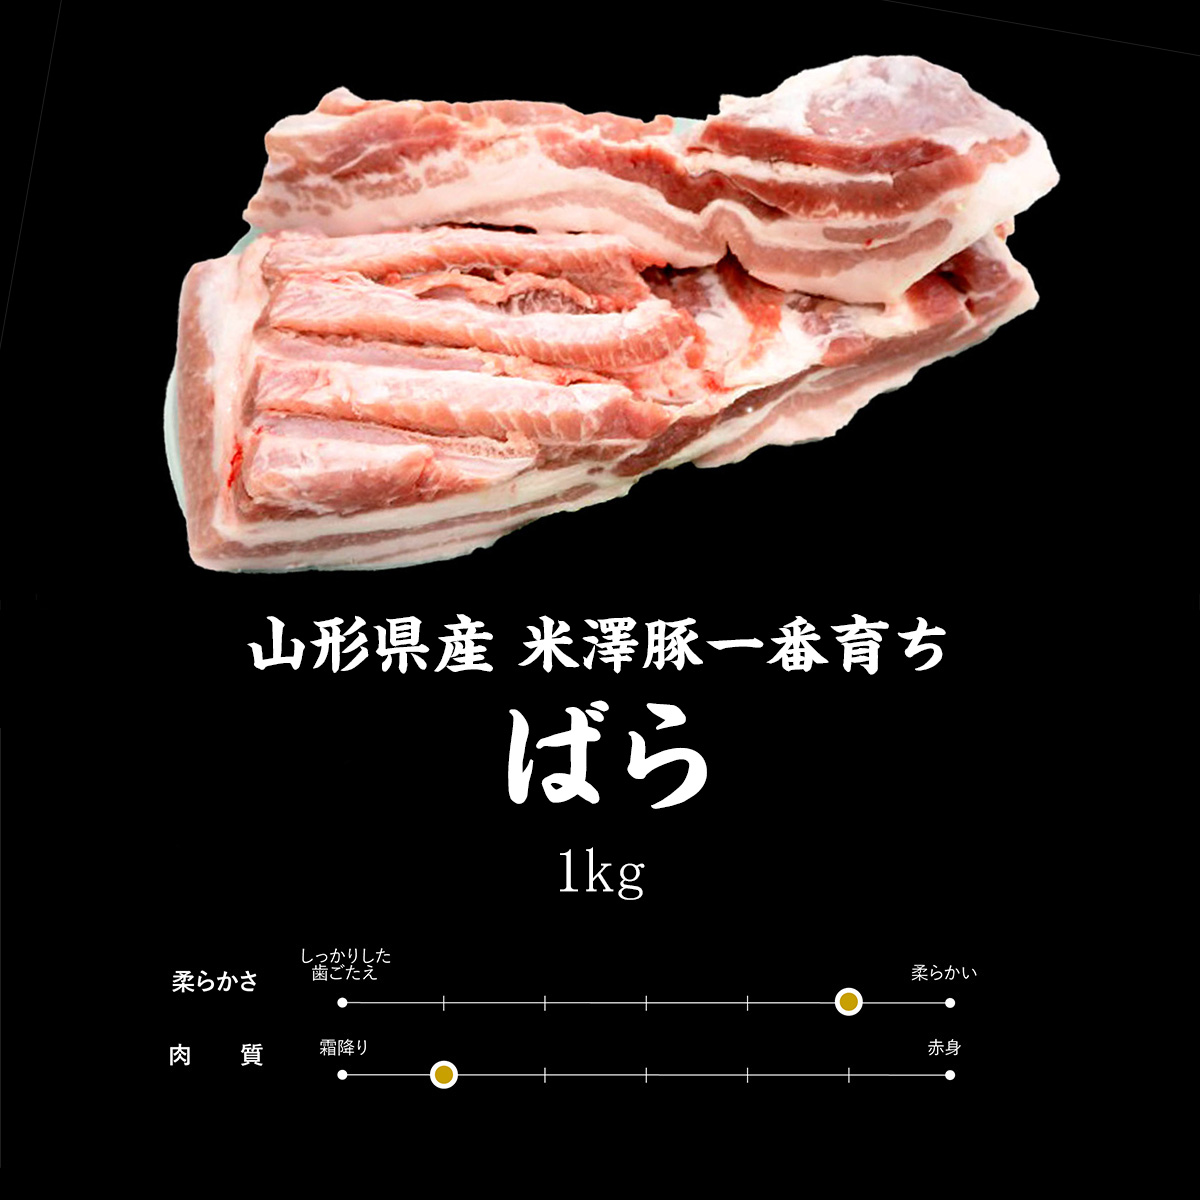 クリアランス セール 銘柄豚 米沢豚 一番育ち バラうす切り 2.5Kg